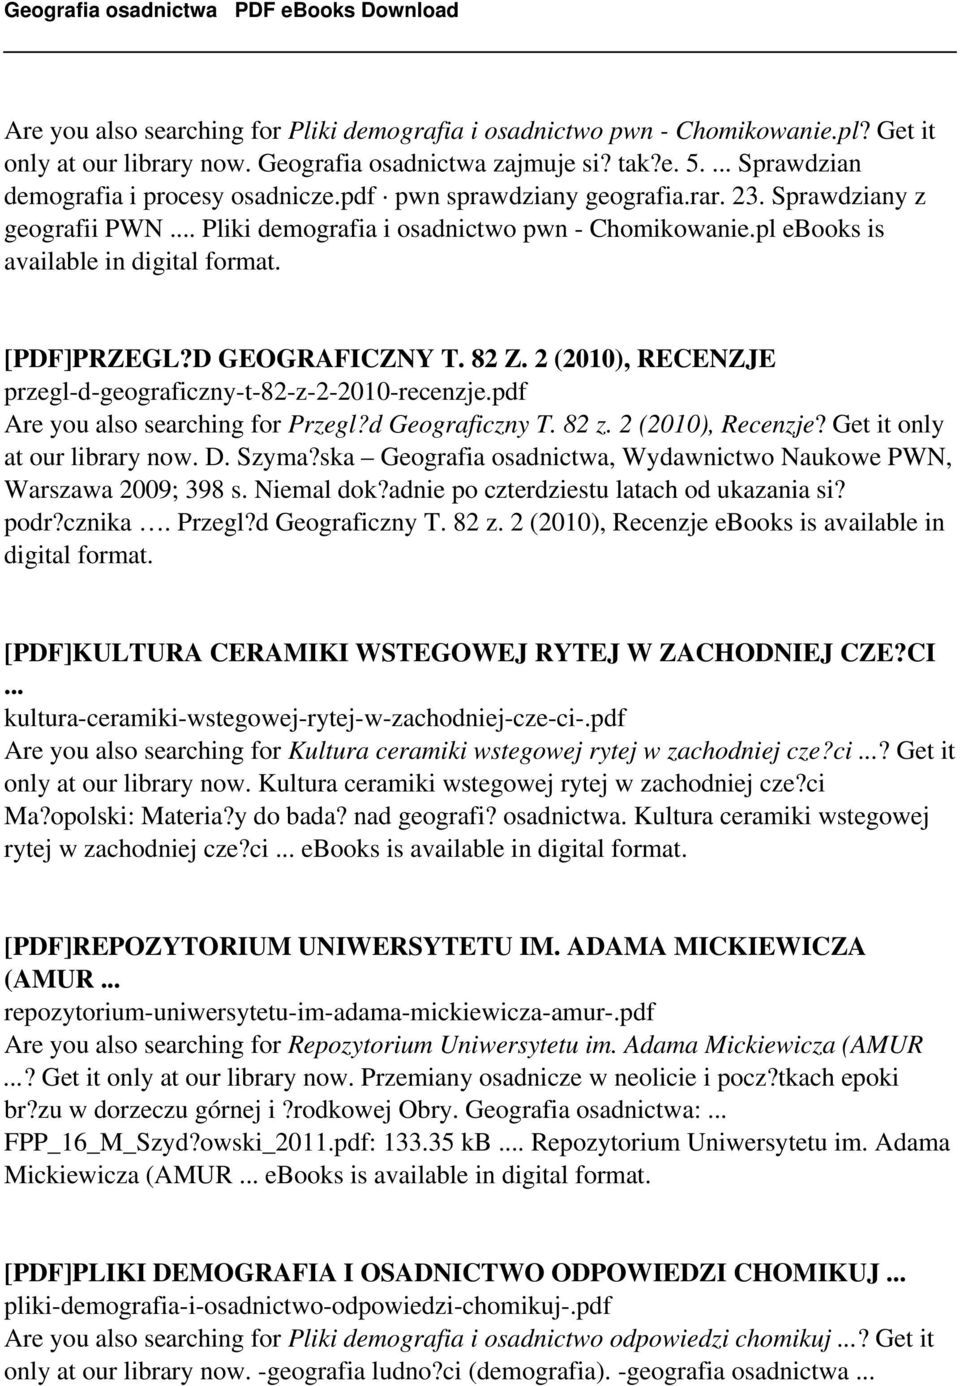 2 (2010), RECENZJE przegl-d-geograficzny-t-82-z-2-2010-recenzje.pdf Are you also searching for Przegl?d Geograficzny T. 82 z. 2 (2010), Recenzje? Get it only at our library now. D. Szyma?